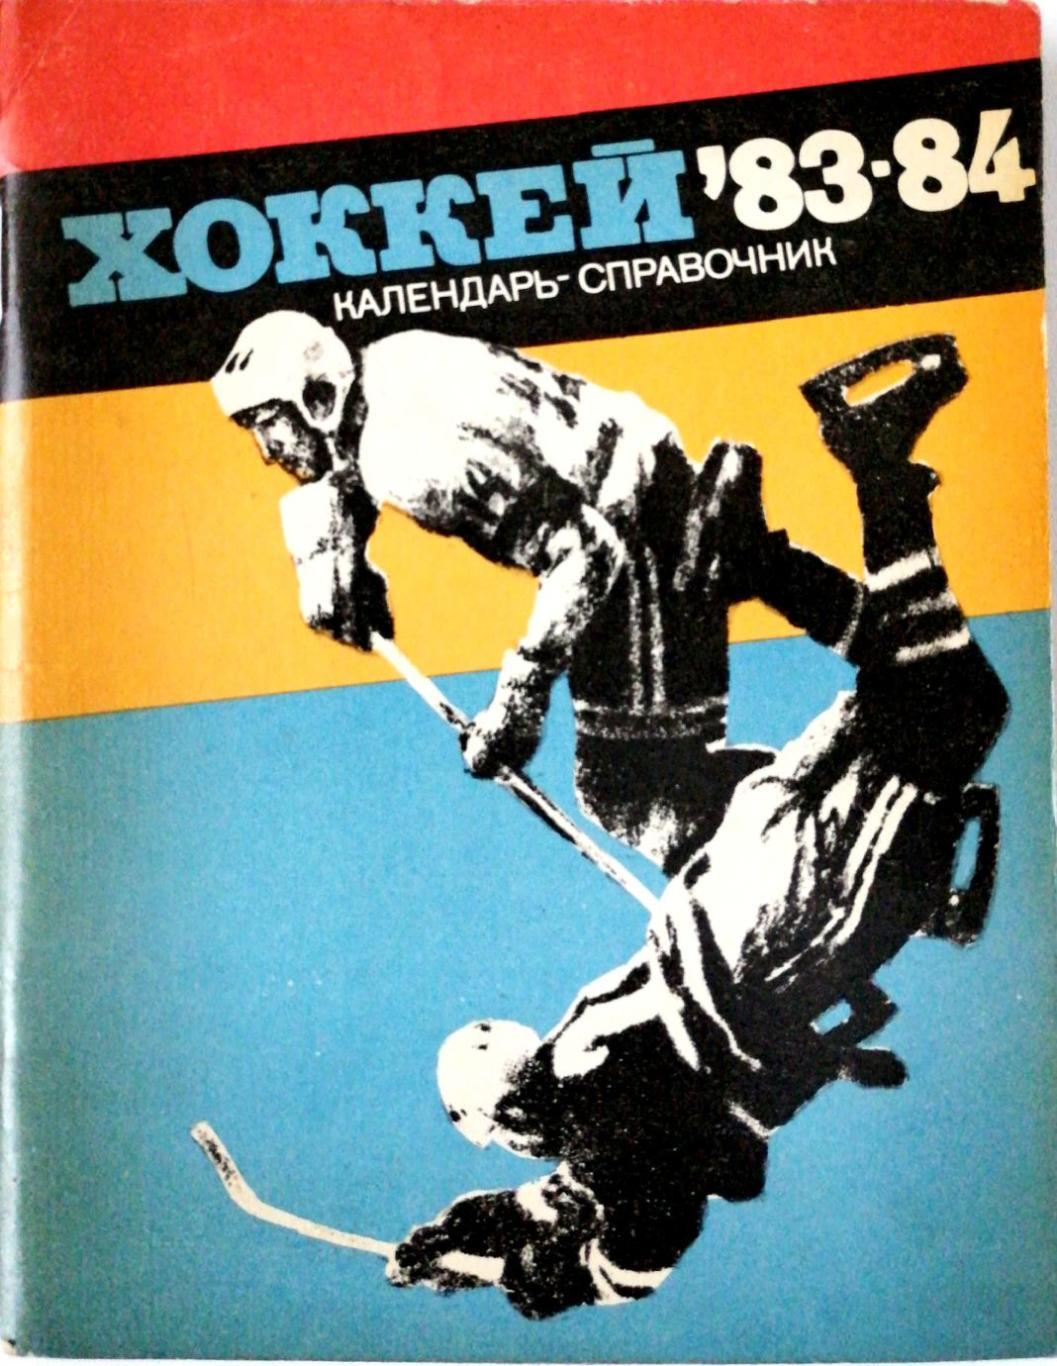 Хоккей. Календарь-справочник. Ленинград. 1983/84